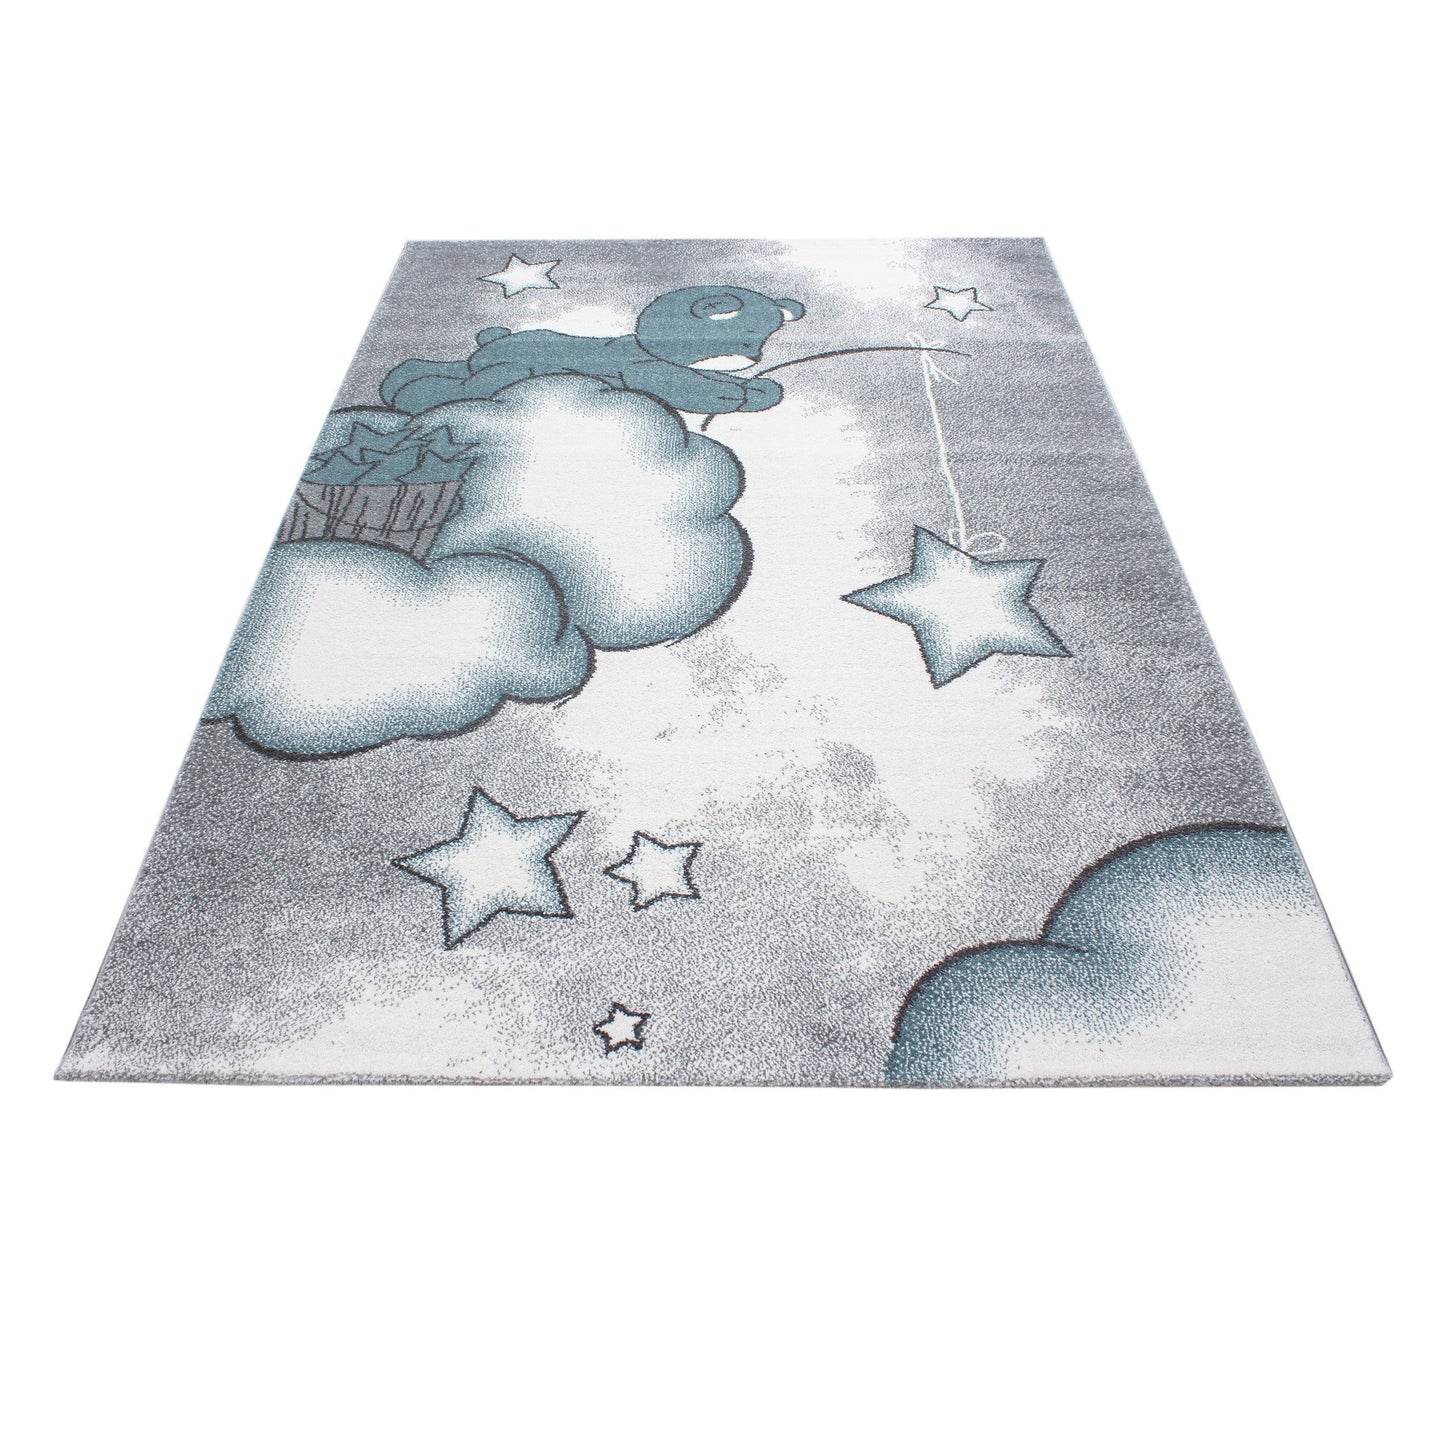 Kinderteppich Kinderzimmer Teppich Bär Wolken Stern-Angeln Grau-Weiß-Blau